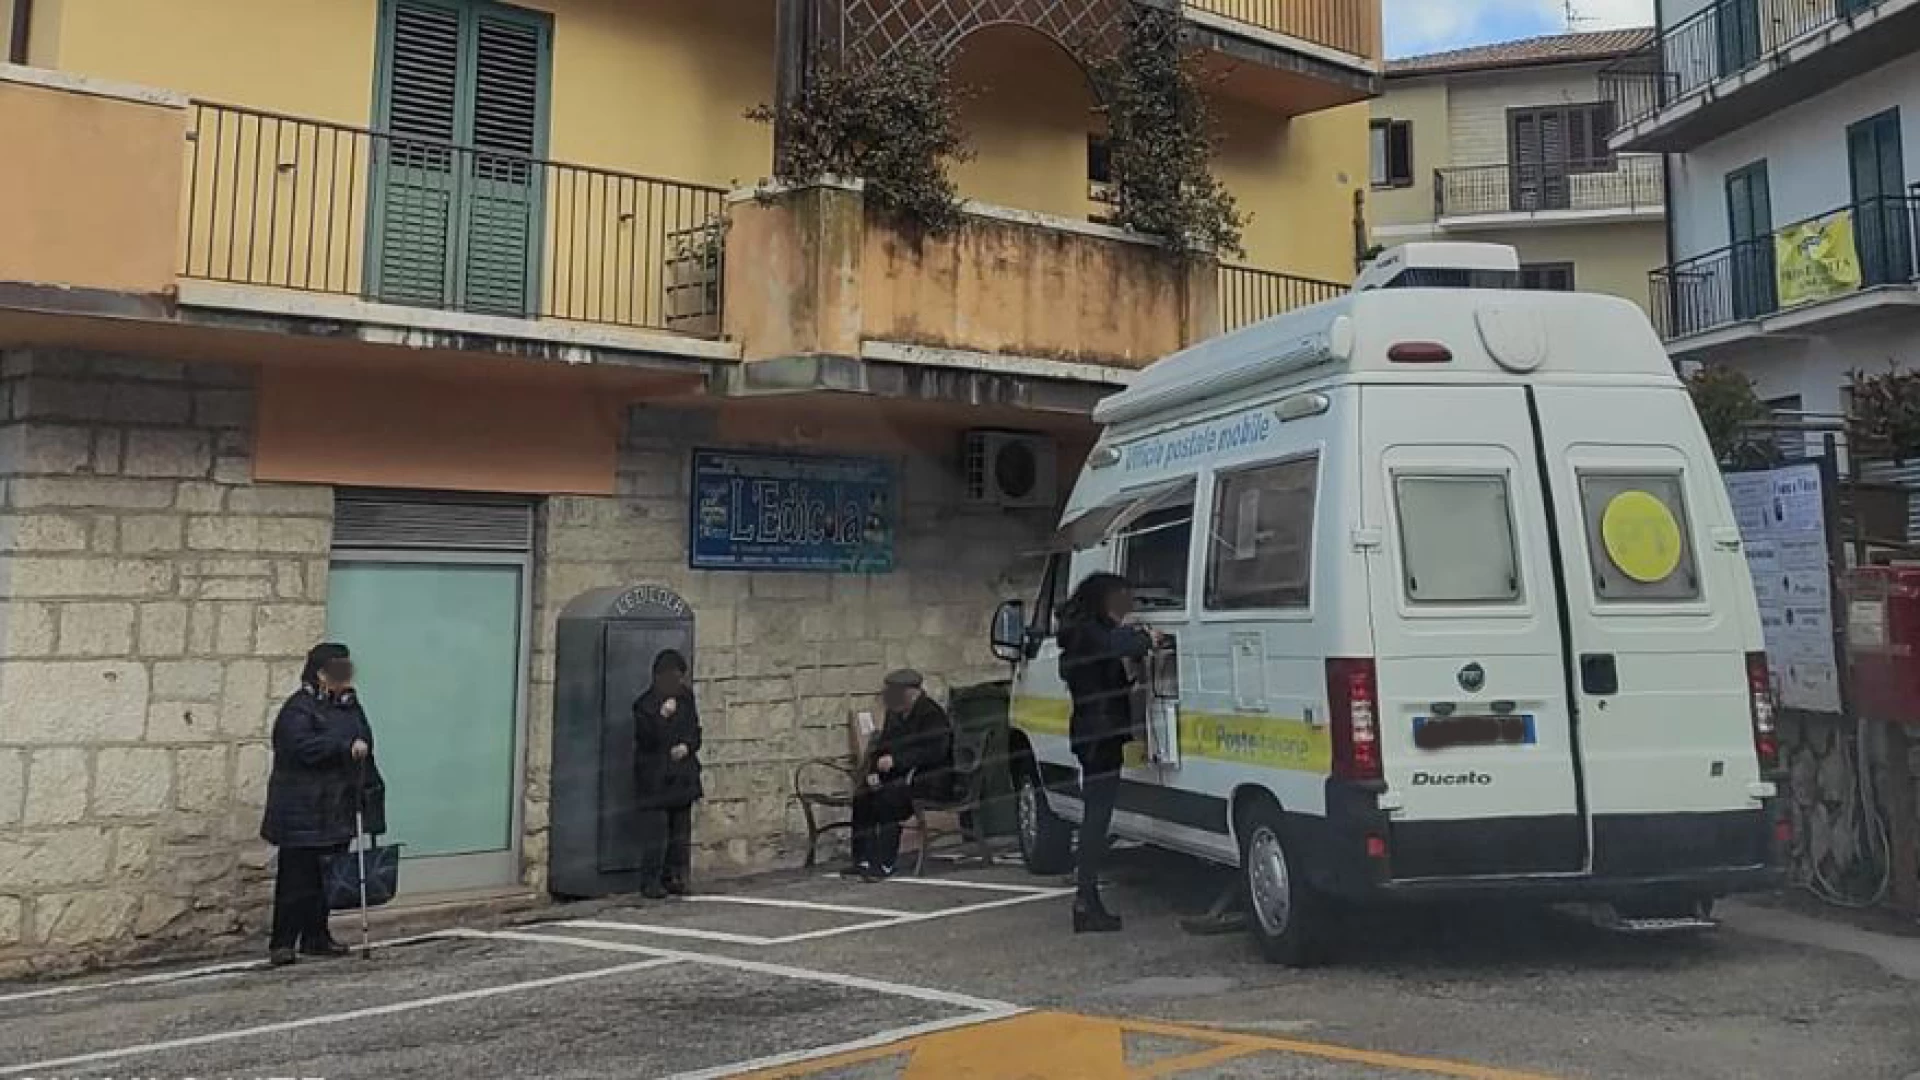 Colli a Volturno: i cittadini esausti e demoralizzati. L’ufficio Mobile di Poste Italiane e’ inadeguato per le esigenze della popolazione. “Pronti a chiudere i nostri conti corrente”.